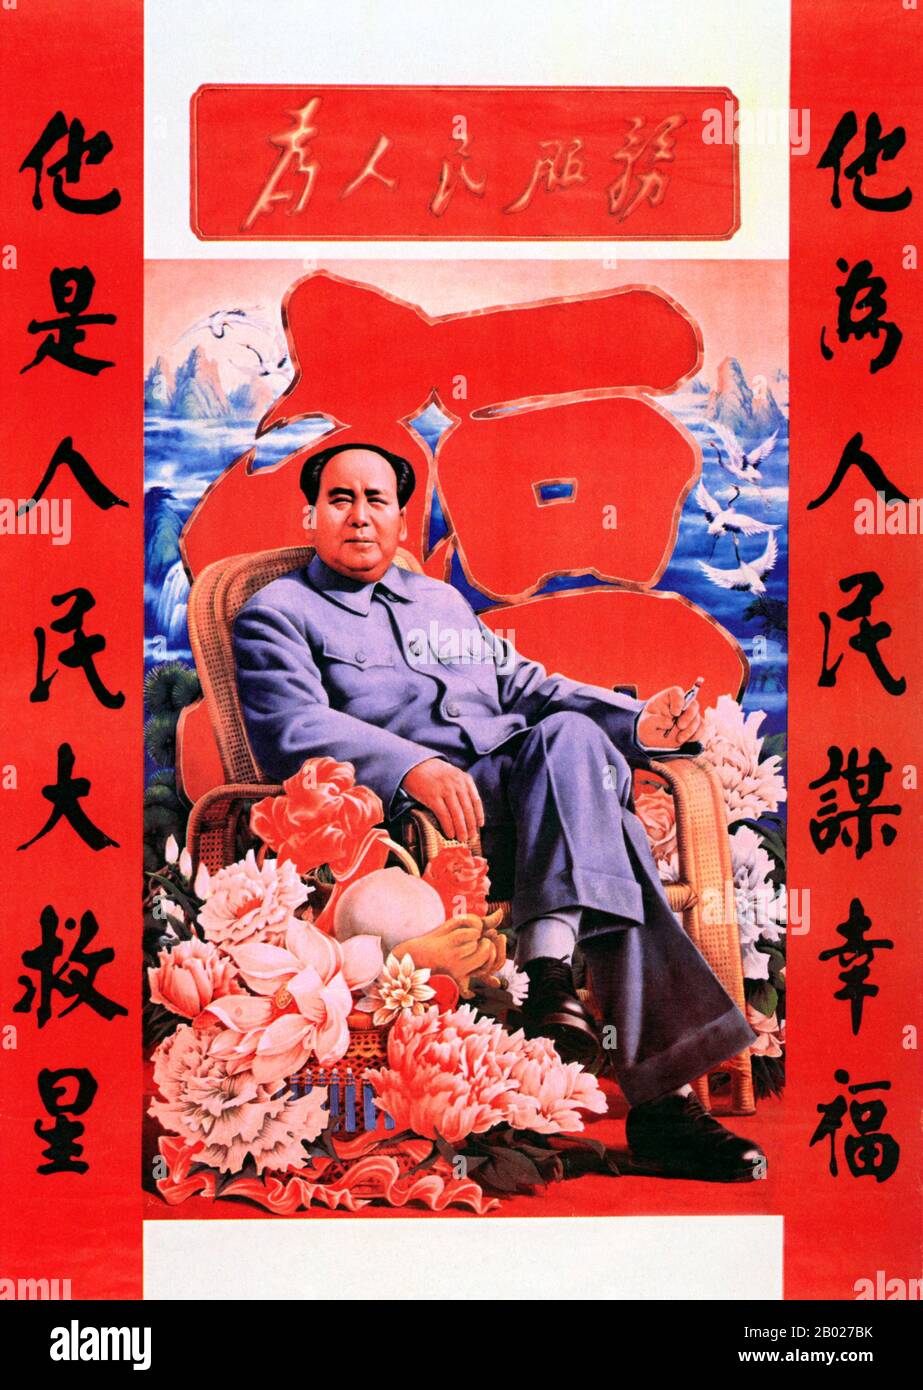 Mao Zedong, anche traslitterato come Mao Tse-tung (26 dicembre 1893 – 9 settembre 1976), è stato un rivoluzionario comunista cinese, guerriglia stratega, autore, teorico politico, e leader della Rivoluzione cinese. Comunemente chiamato Chairman Mao, fu l'architetto della Repubblica Popolare Cinese (PRC) dal suo insediamento nel 1949, e tenne il controllo autoritario sulla nazione fino alla sua morte nel 1976. Il suo contributo teorico al marxismo-leninismo, insieme alle sue strategie militari e alla marca delle politiche politiche, sono ora collettivamente noti come maoismo. Foto Stock